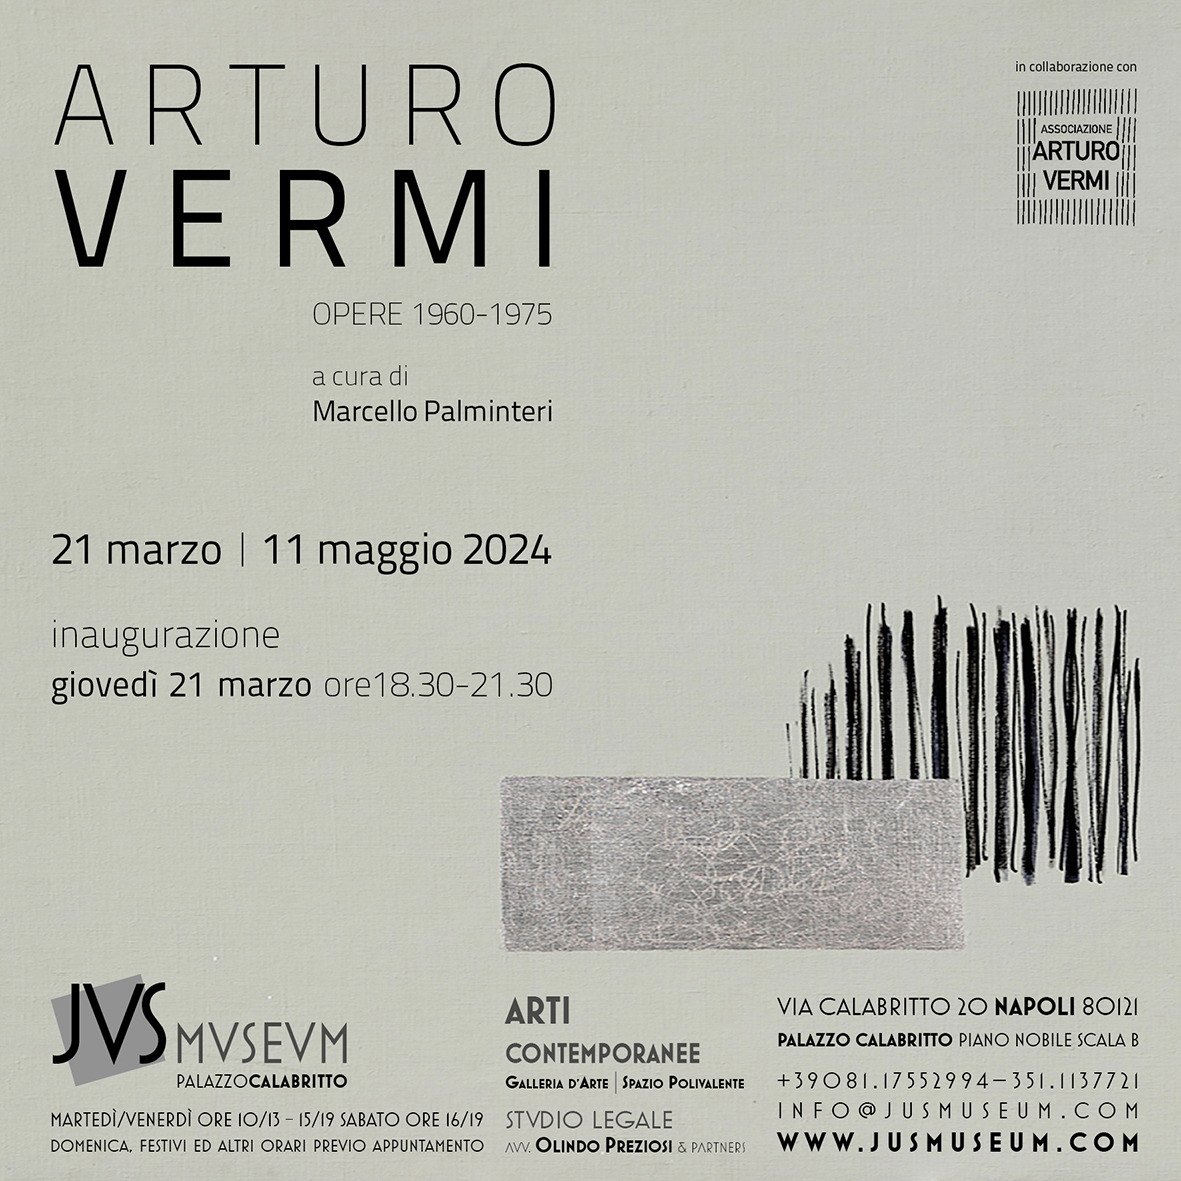 Arturo Vermi